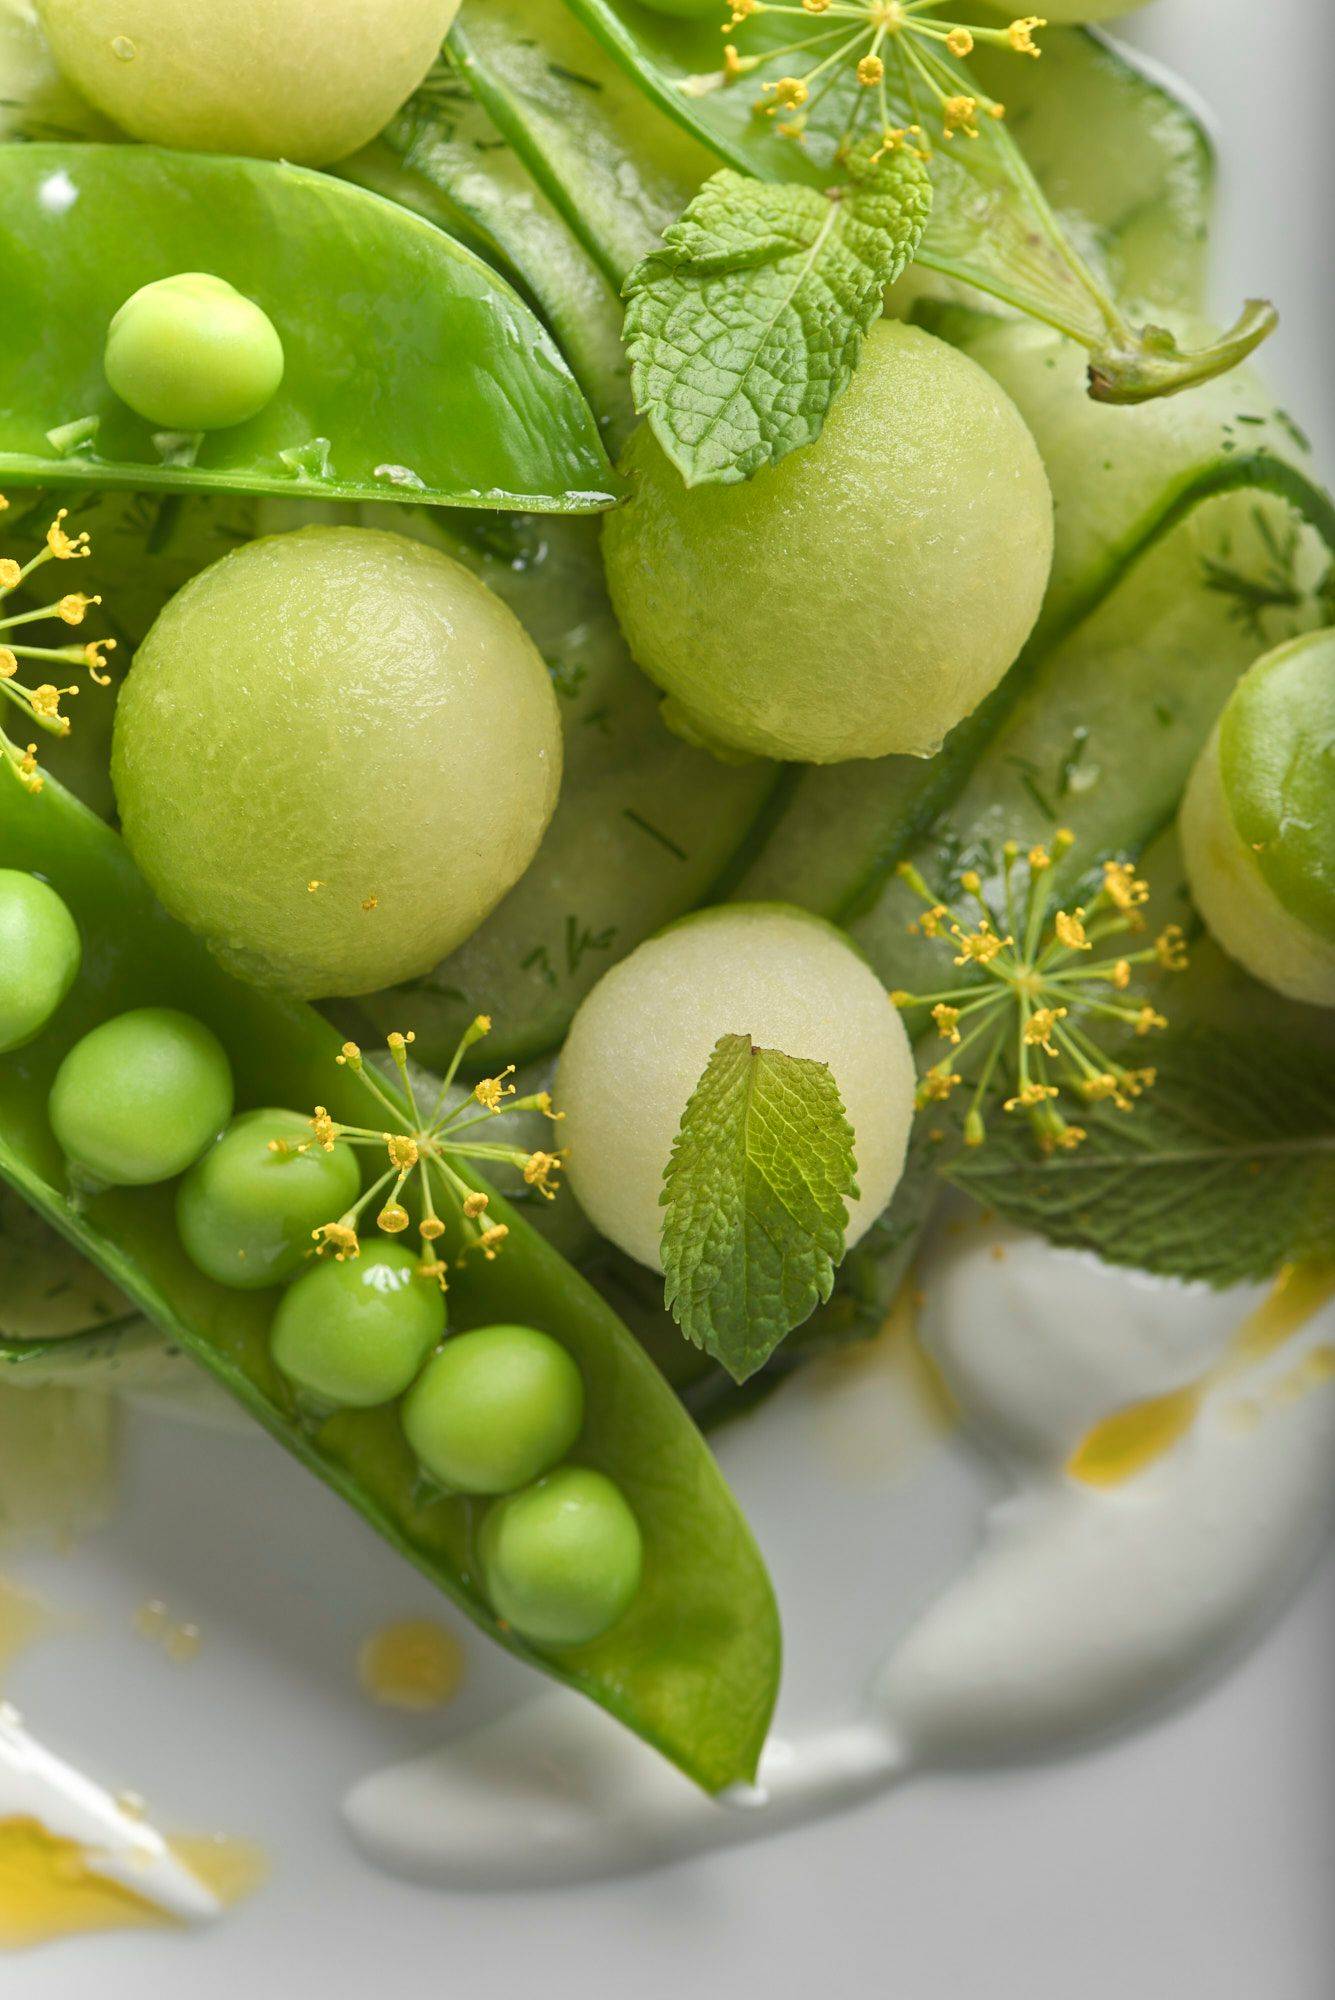 fruchtiger gurkensalat mit melone und leinöl auf einem weißen teller mit marmoriertem sapienstone top